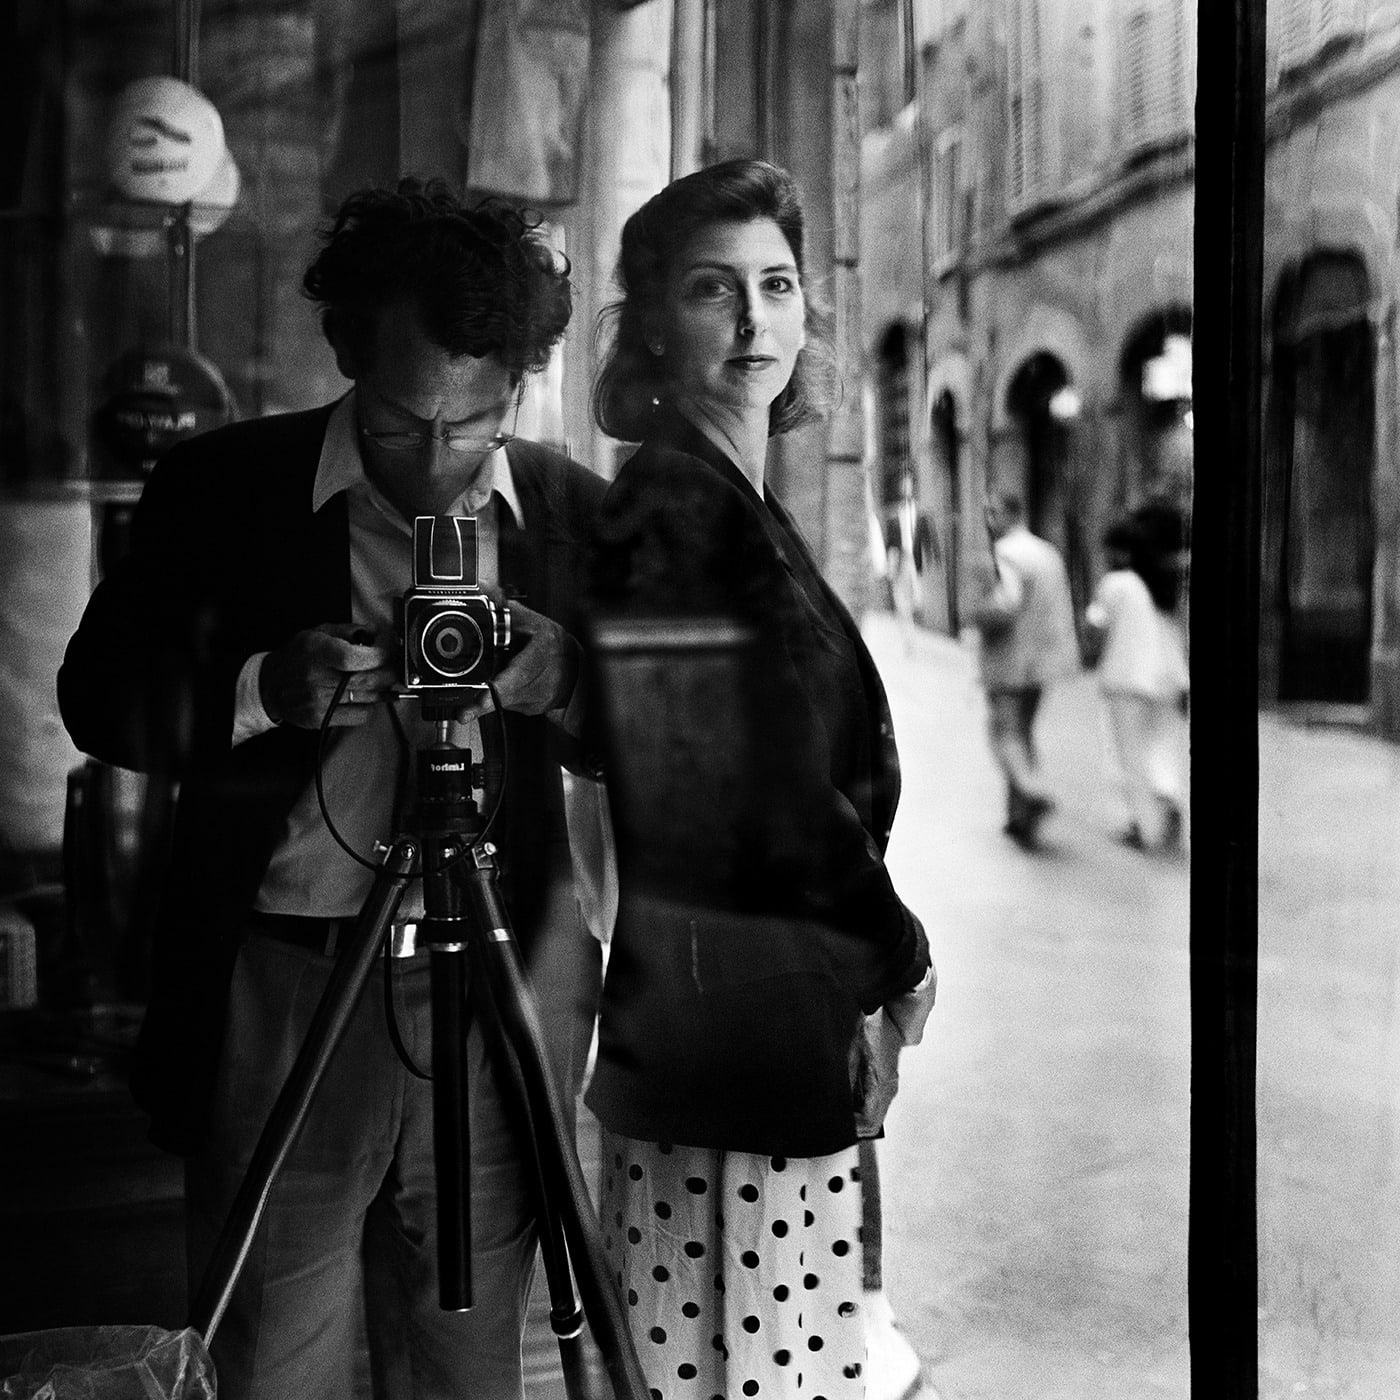 Rodney Smith, Self Portrait with Leslie, Siena, Italy, 1990